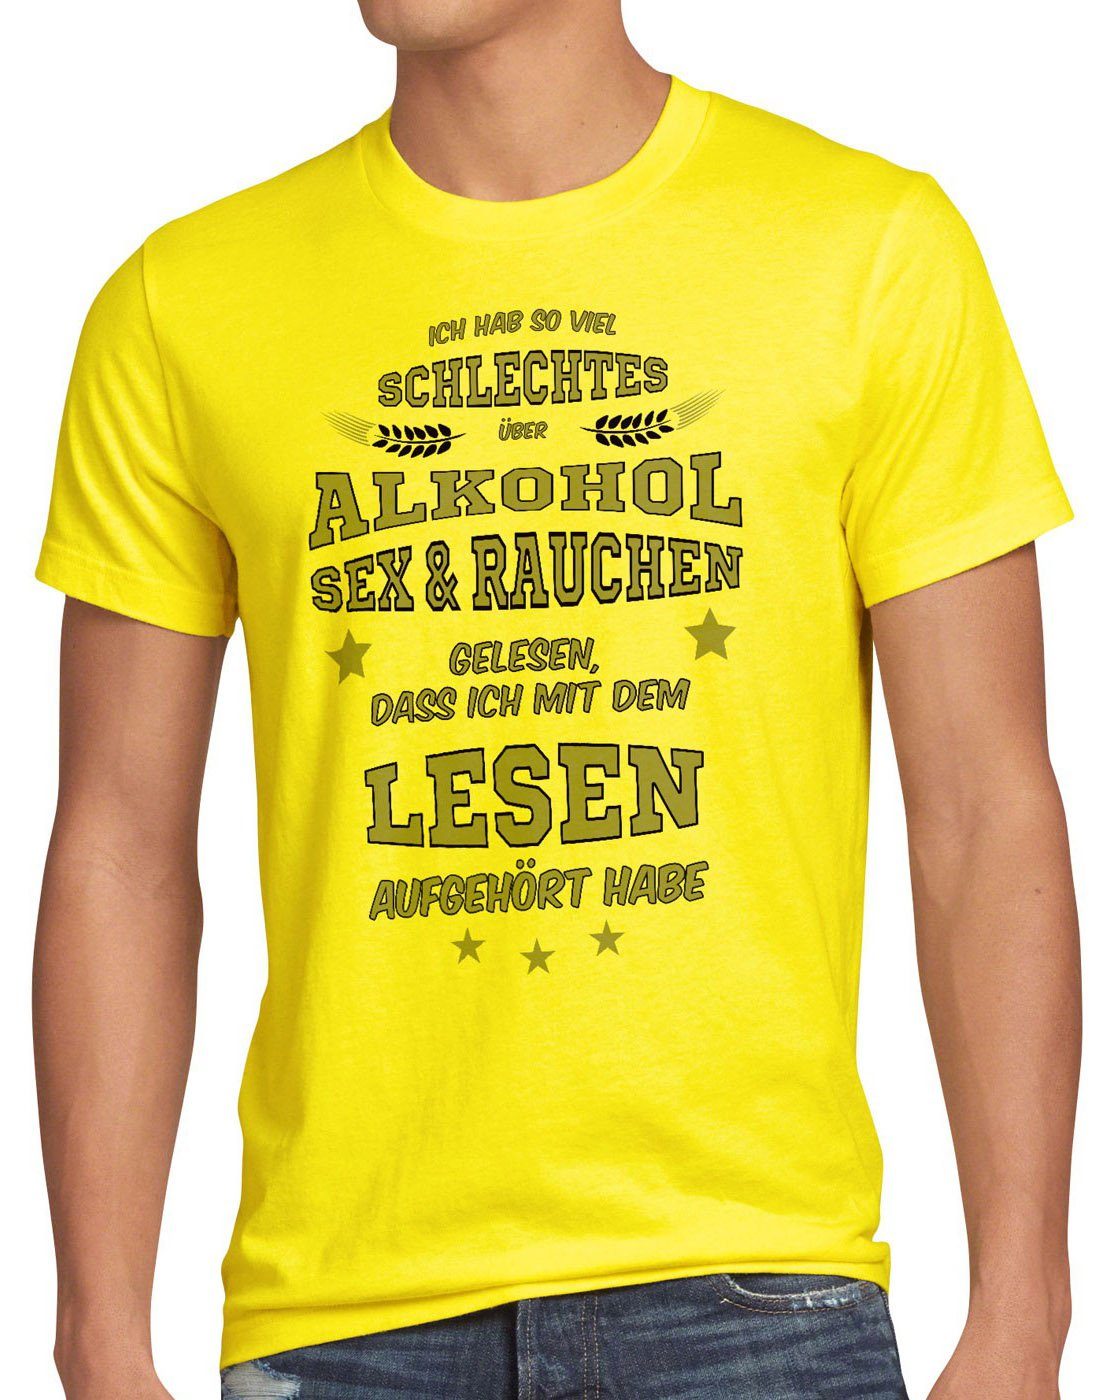 style3 Print-Shirt Herren T-Shirt Viel schlechtes Alkohol Sex Rauchen gelesen Spruch Fun Funshirt gelb